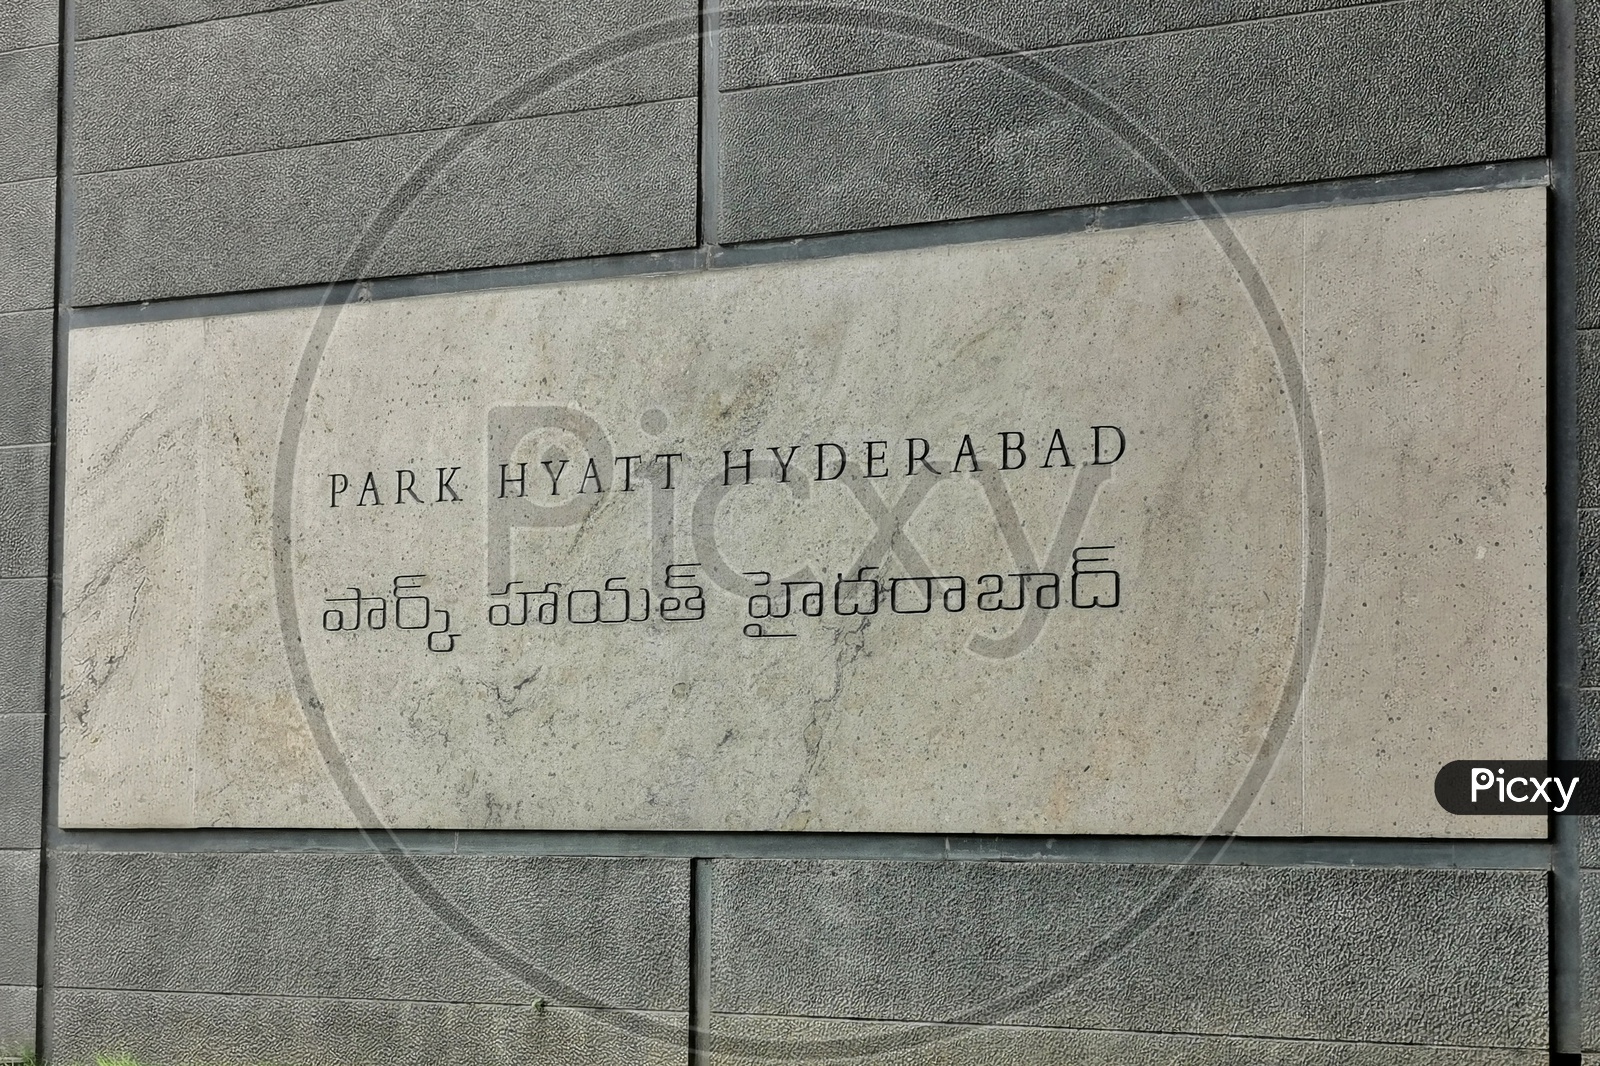 Park Hyatt Hyderabad